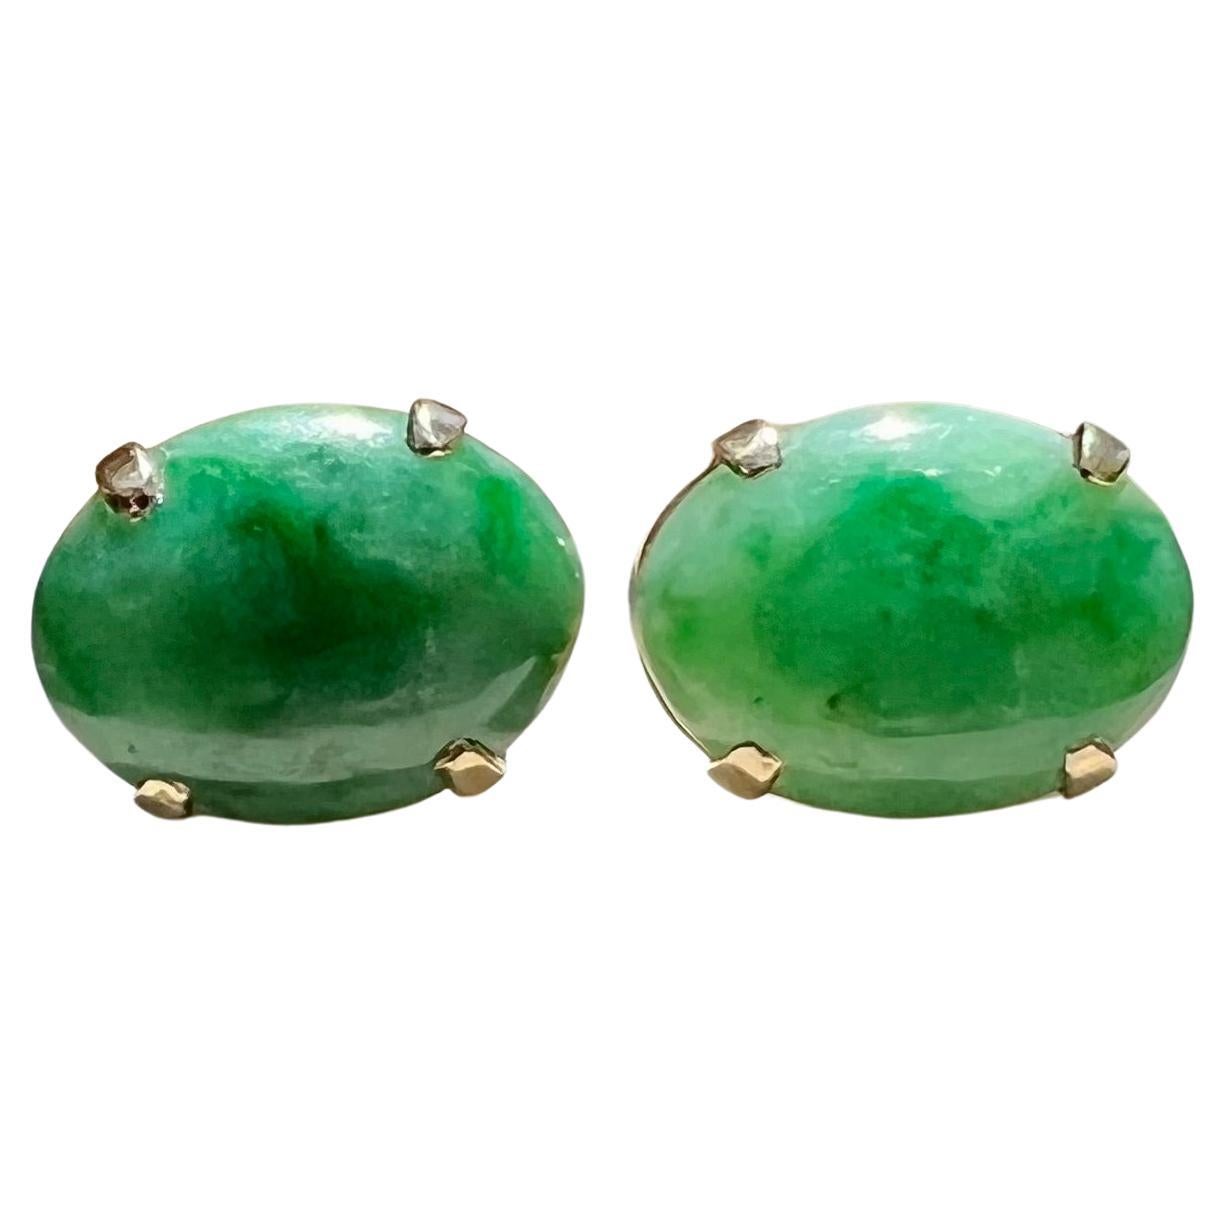 Oval Jade Earrings in 14 Karat Yellow Gold